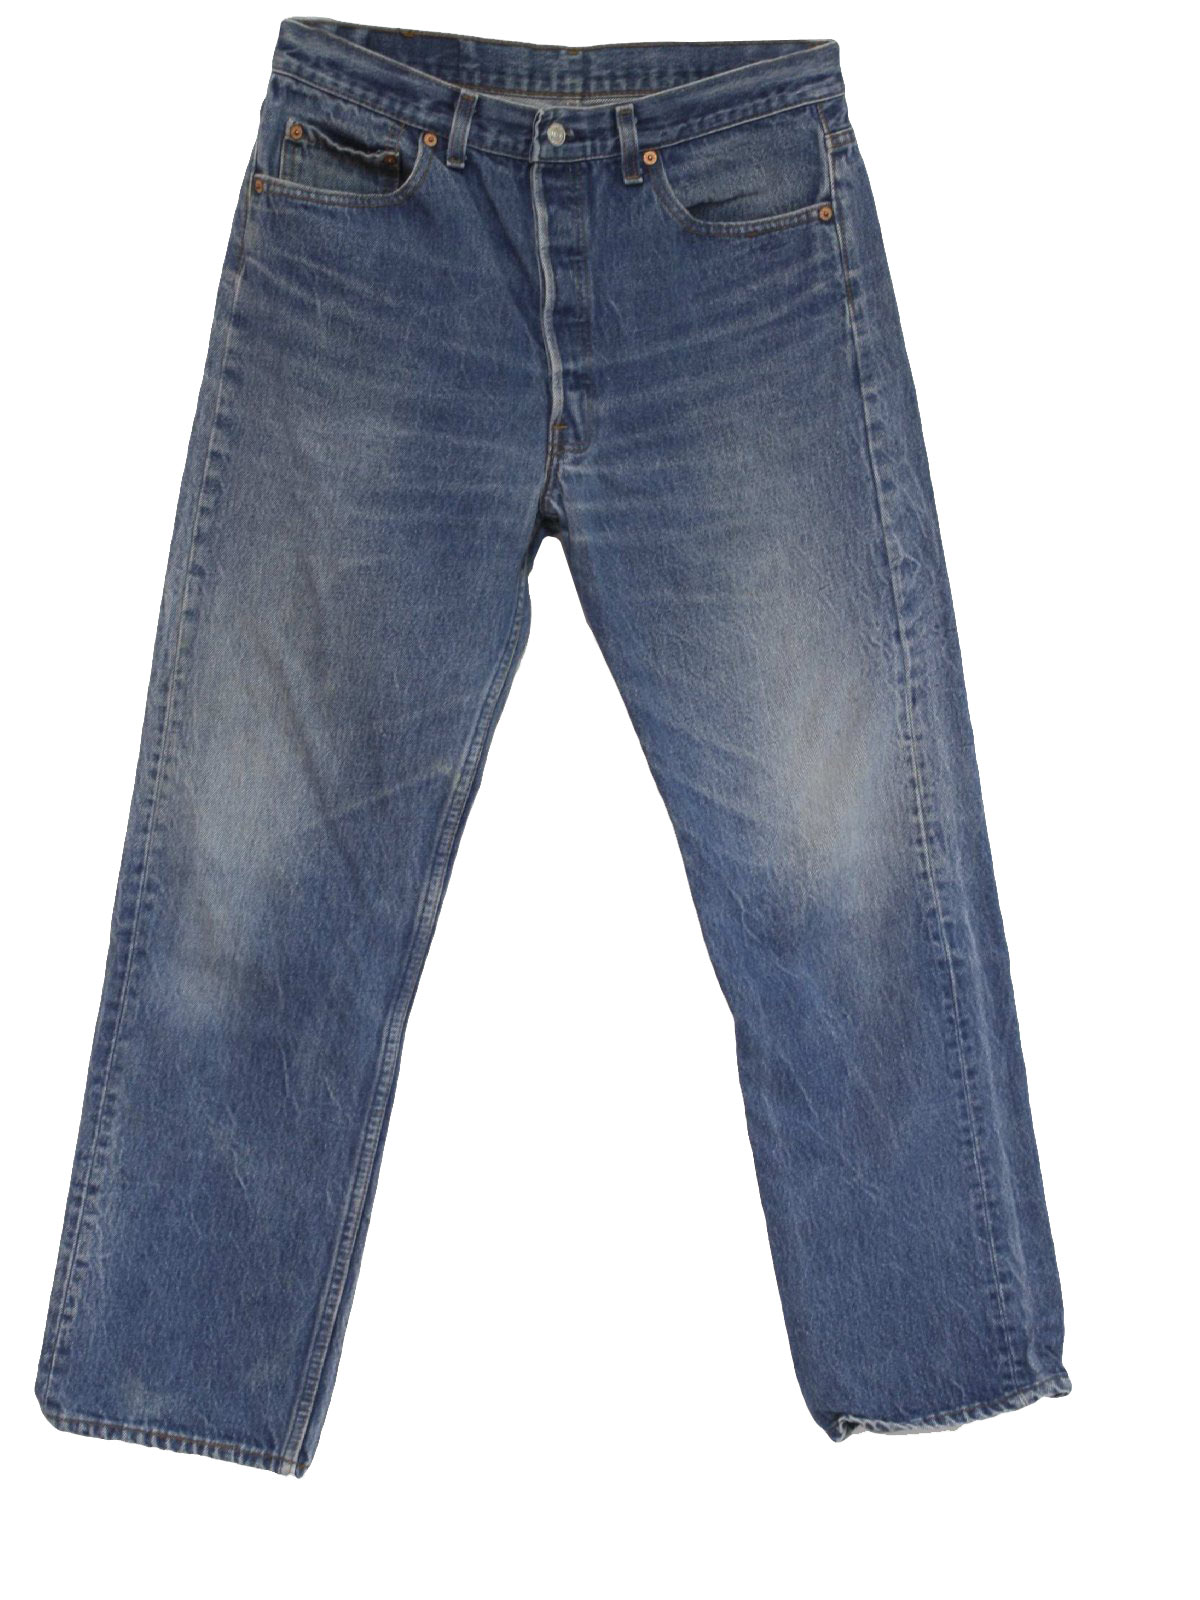 90s Vintage Levis Pants: 90s -Levis- Mens beautiful fade pattern blue ...